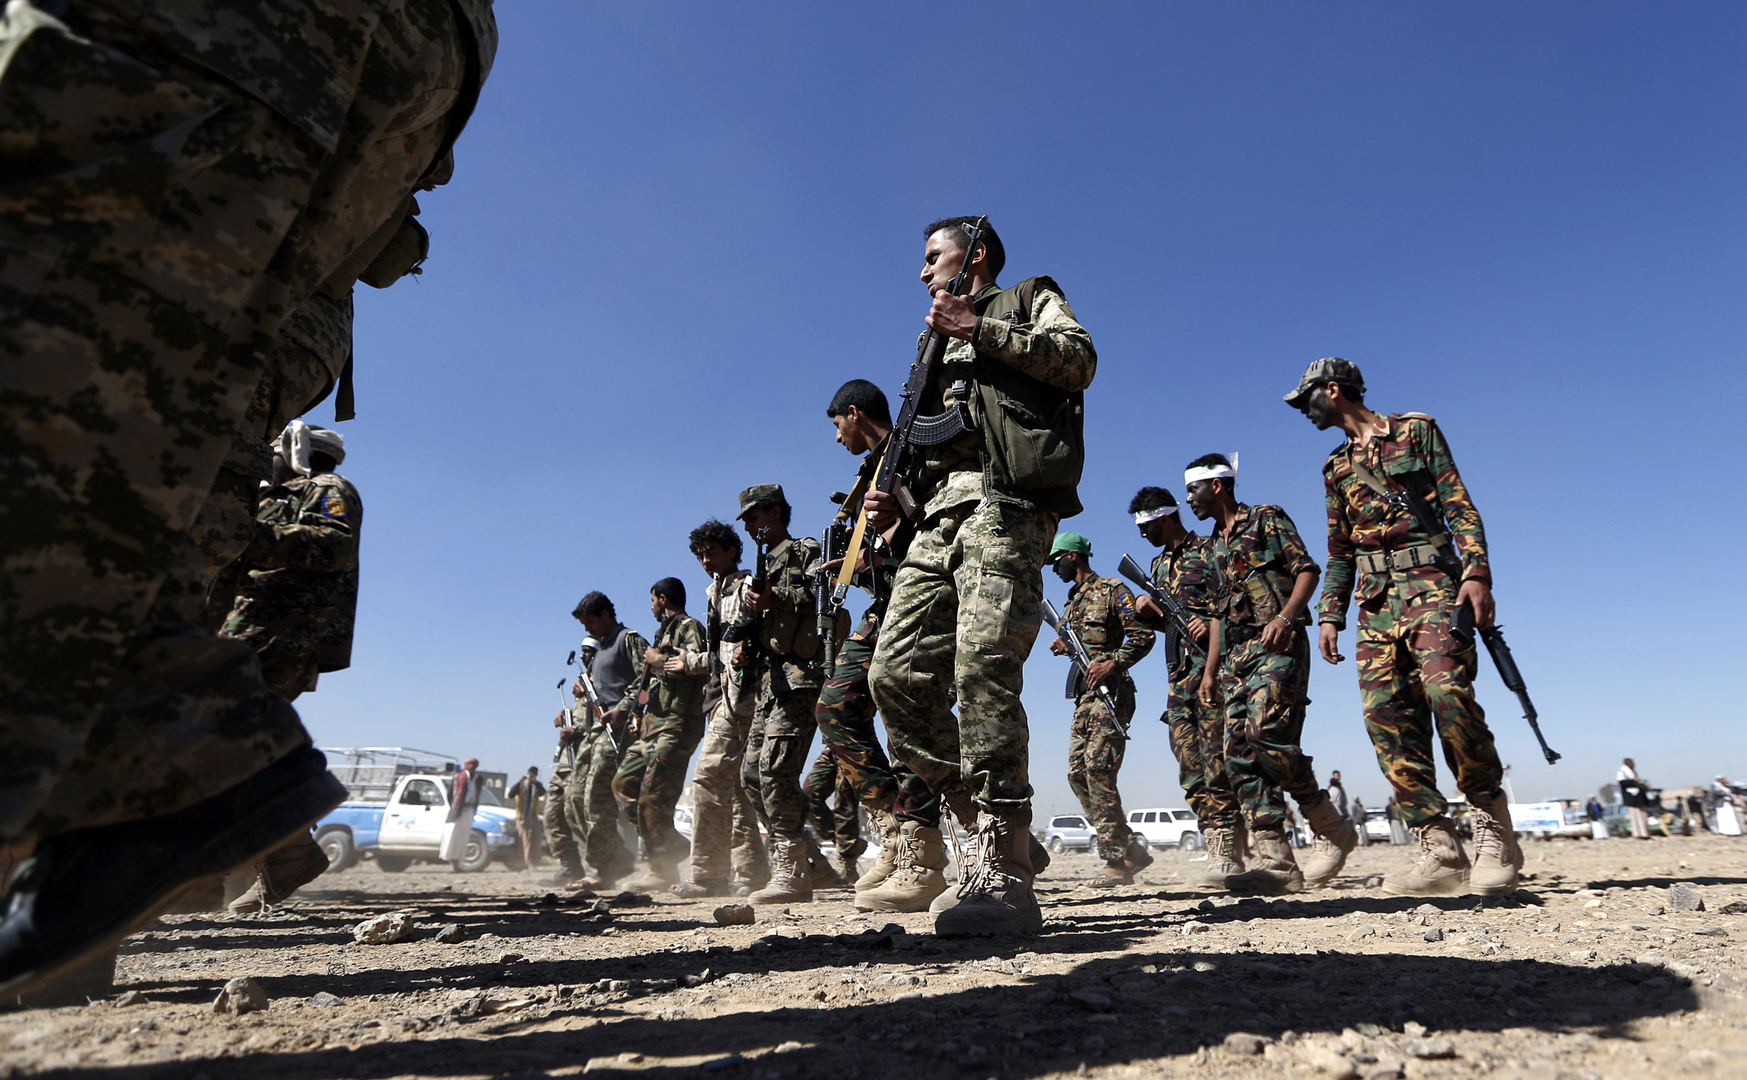 هددوا بشن حرب تاريخية.. الحوثيون يحذرون الجيش الأمريكي من الاقتراب من مياههم الإقليمية